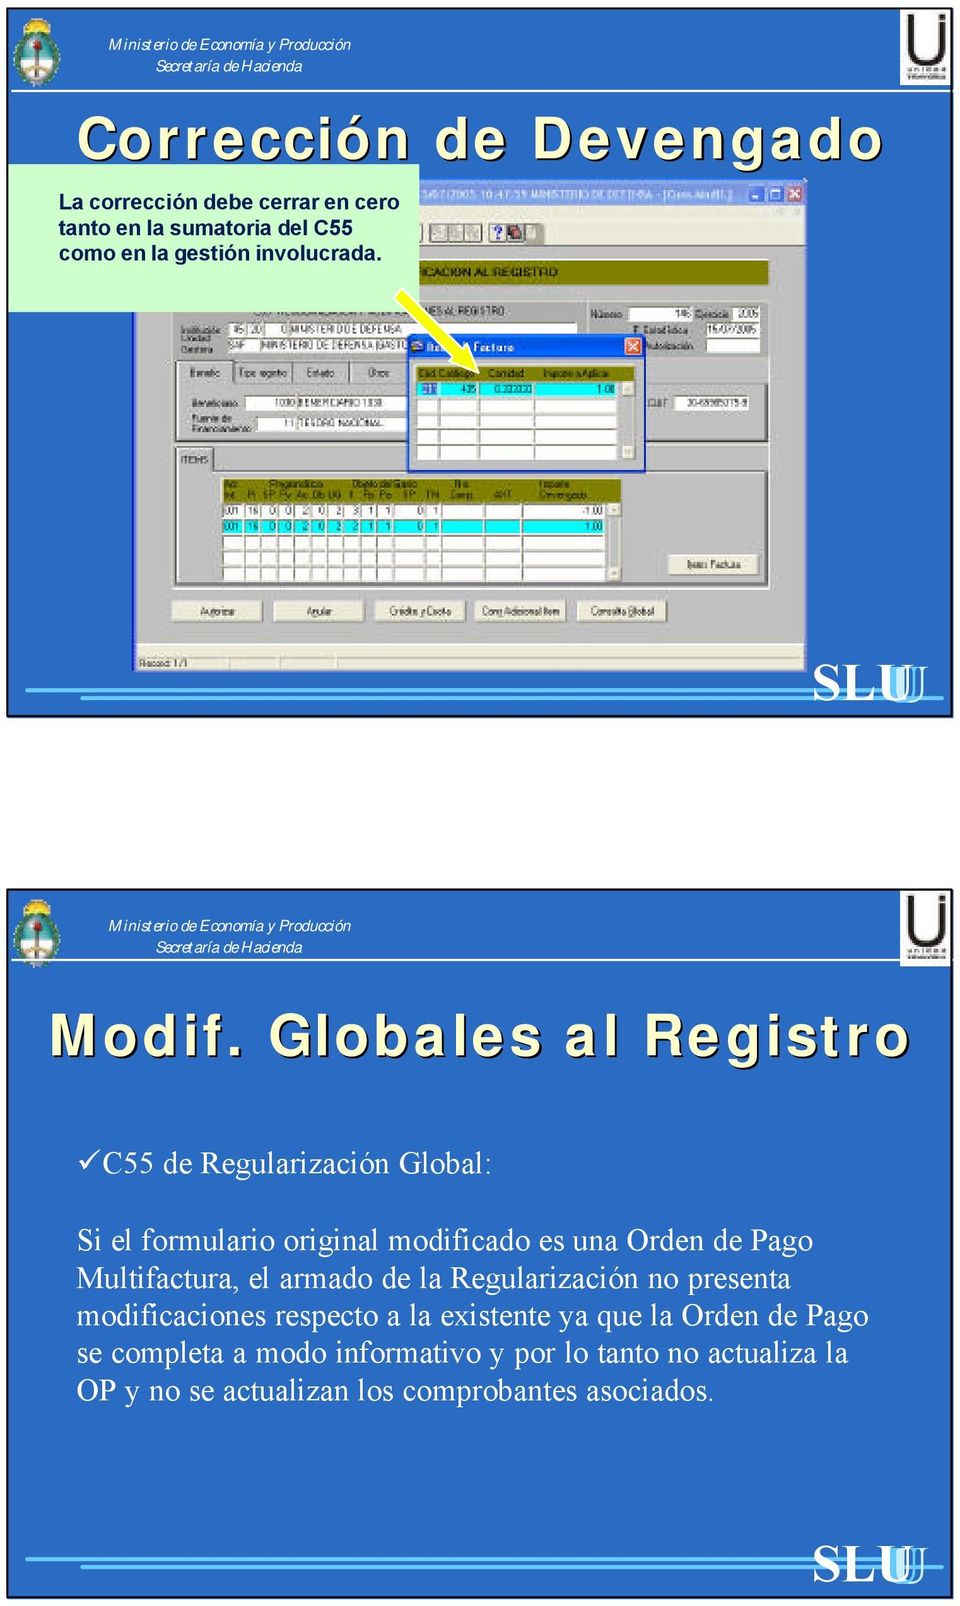 Globales al Registro C55 de Regularización Global: Si el formulario original modificado es una Orden de Pago